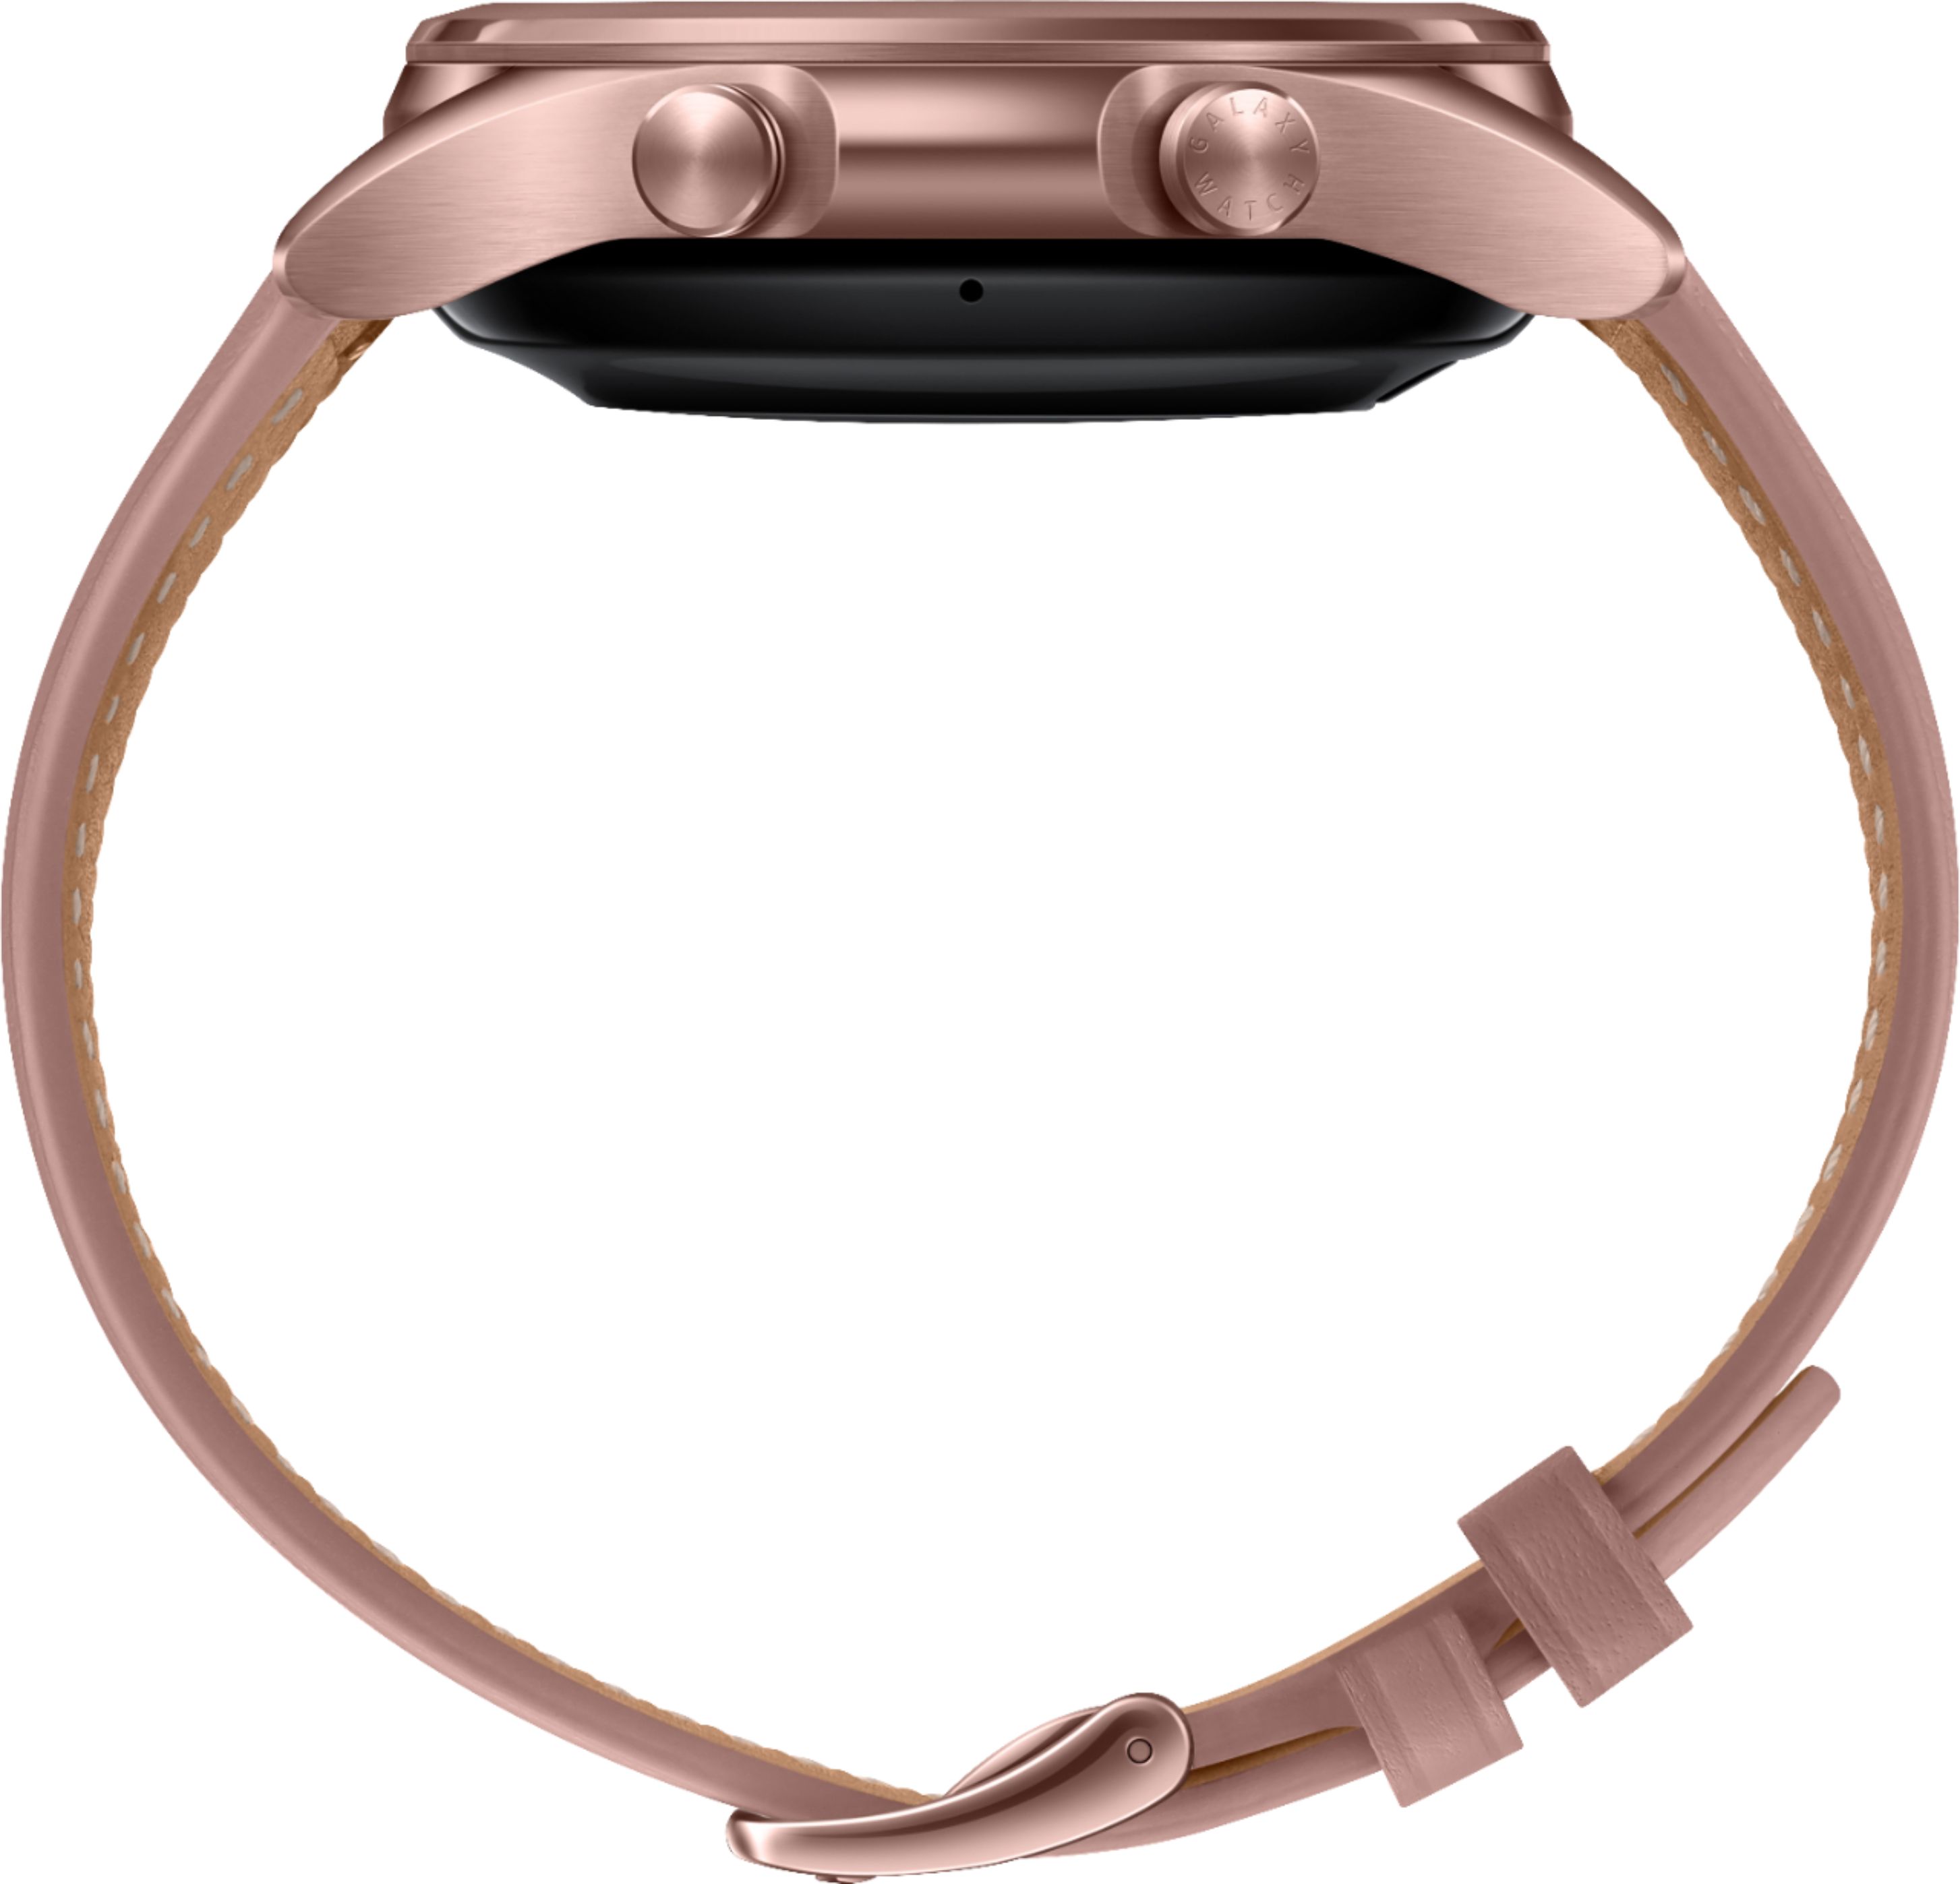 Best Buy Samsung Galaxy Watch3 Smartwatch 41mm Stainless Bt Mystic Bronze Sm R850nzdaxar